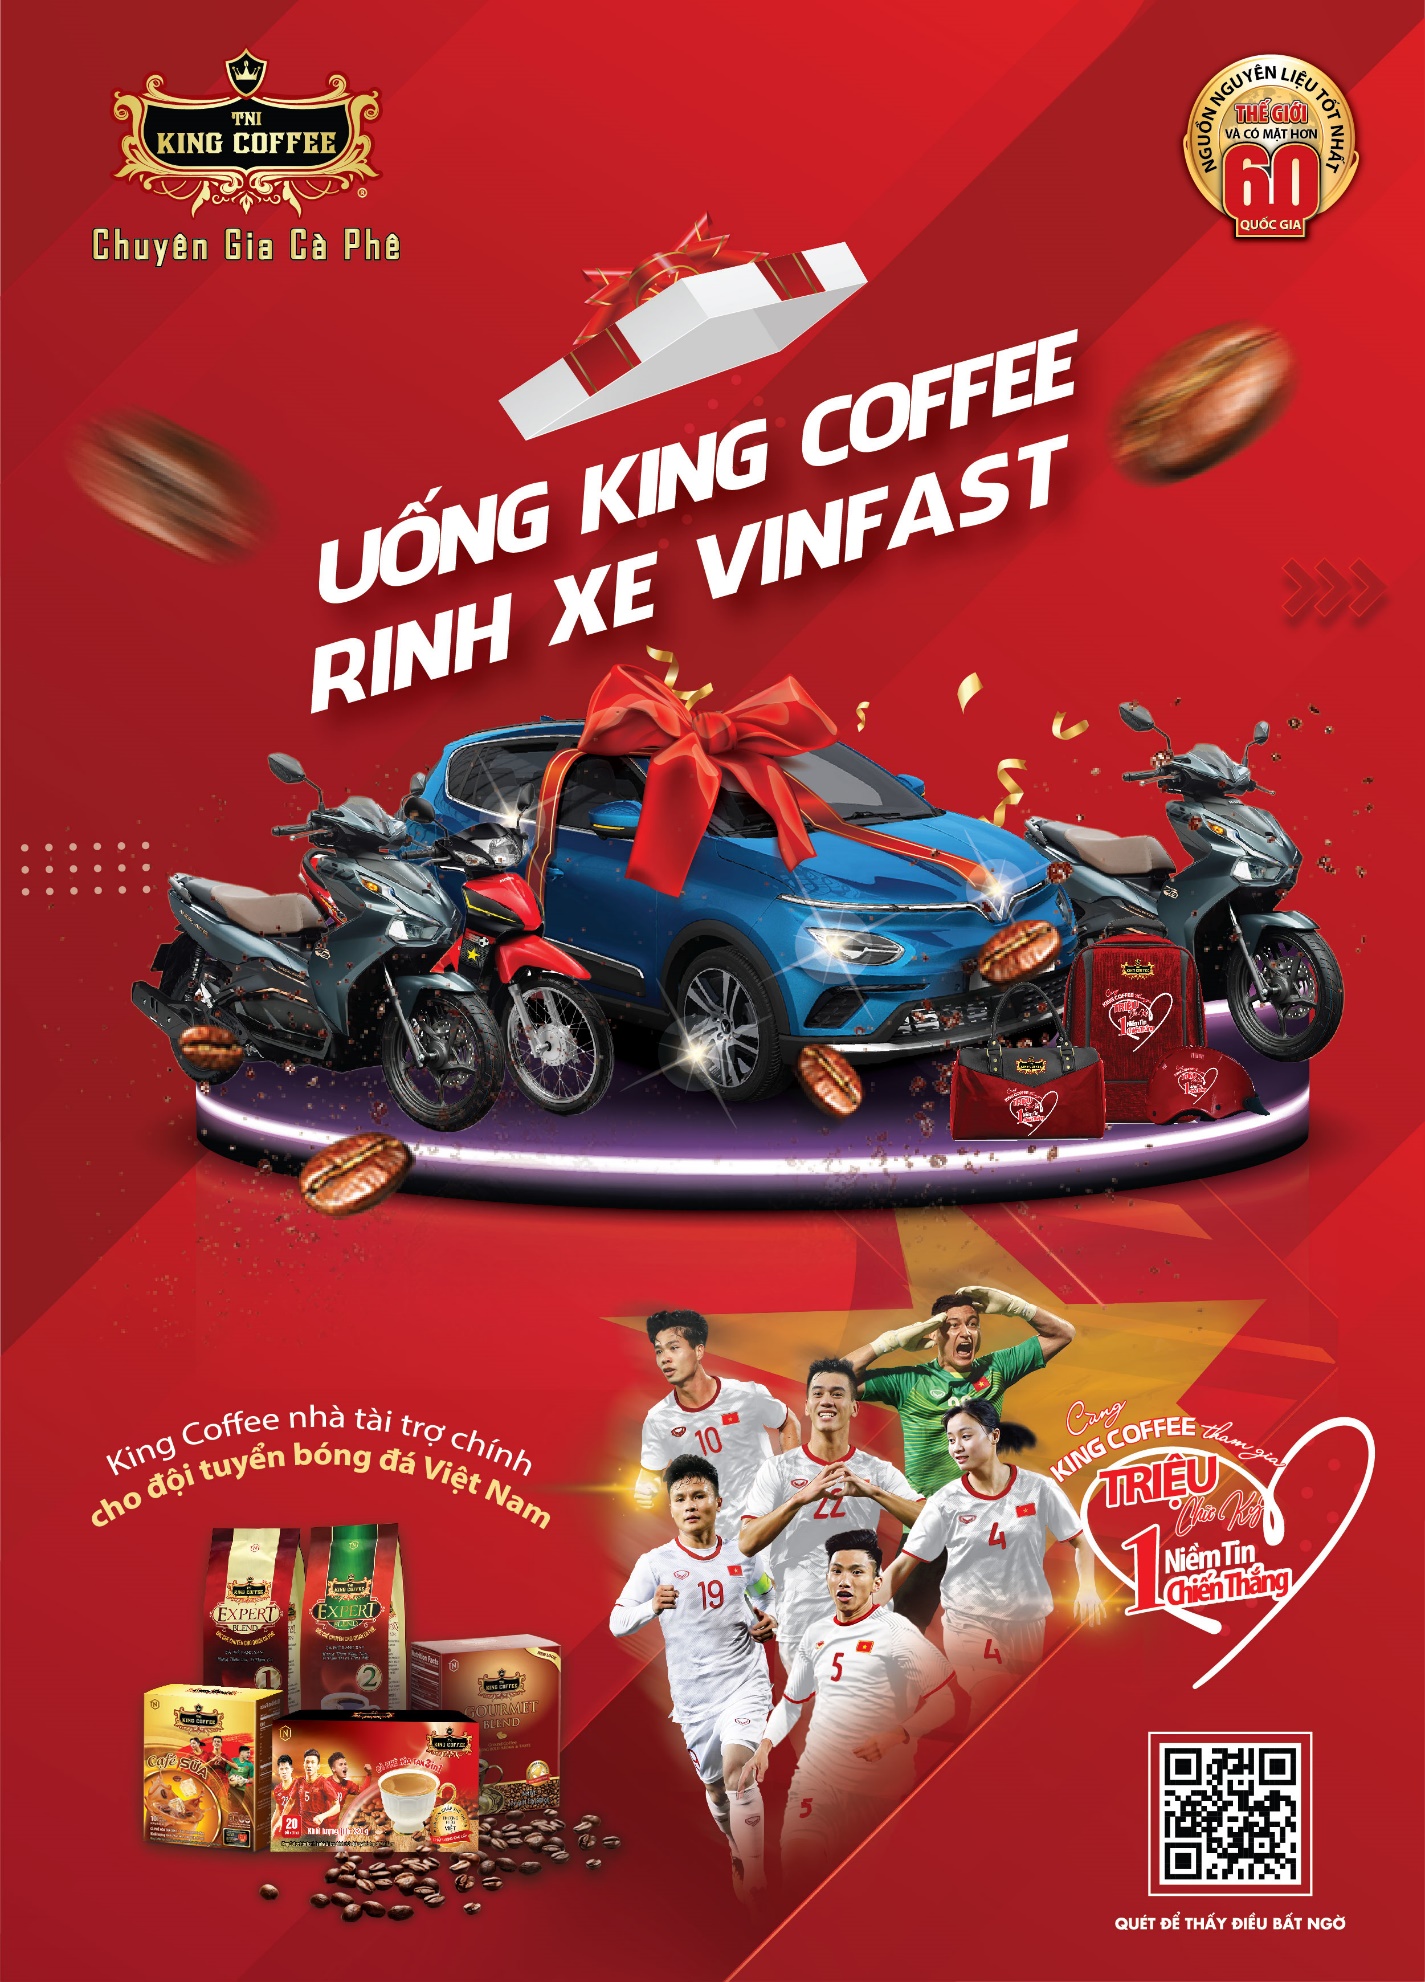 TNI KING COFFEE đã trao chiếc xe máy thứ tư trong chương trình “Triệu chữ ký- Một niềm tin chiến thắng” tại Siêu thị đầu tiên ở Thủ đô Hà Nội - Ảnh 2.